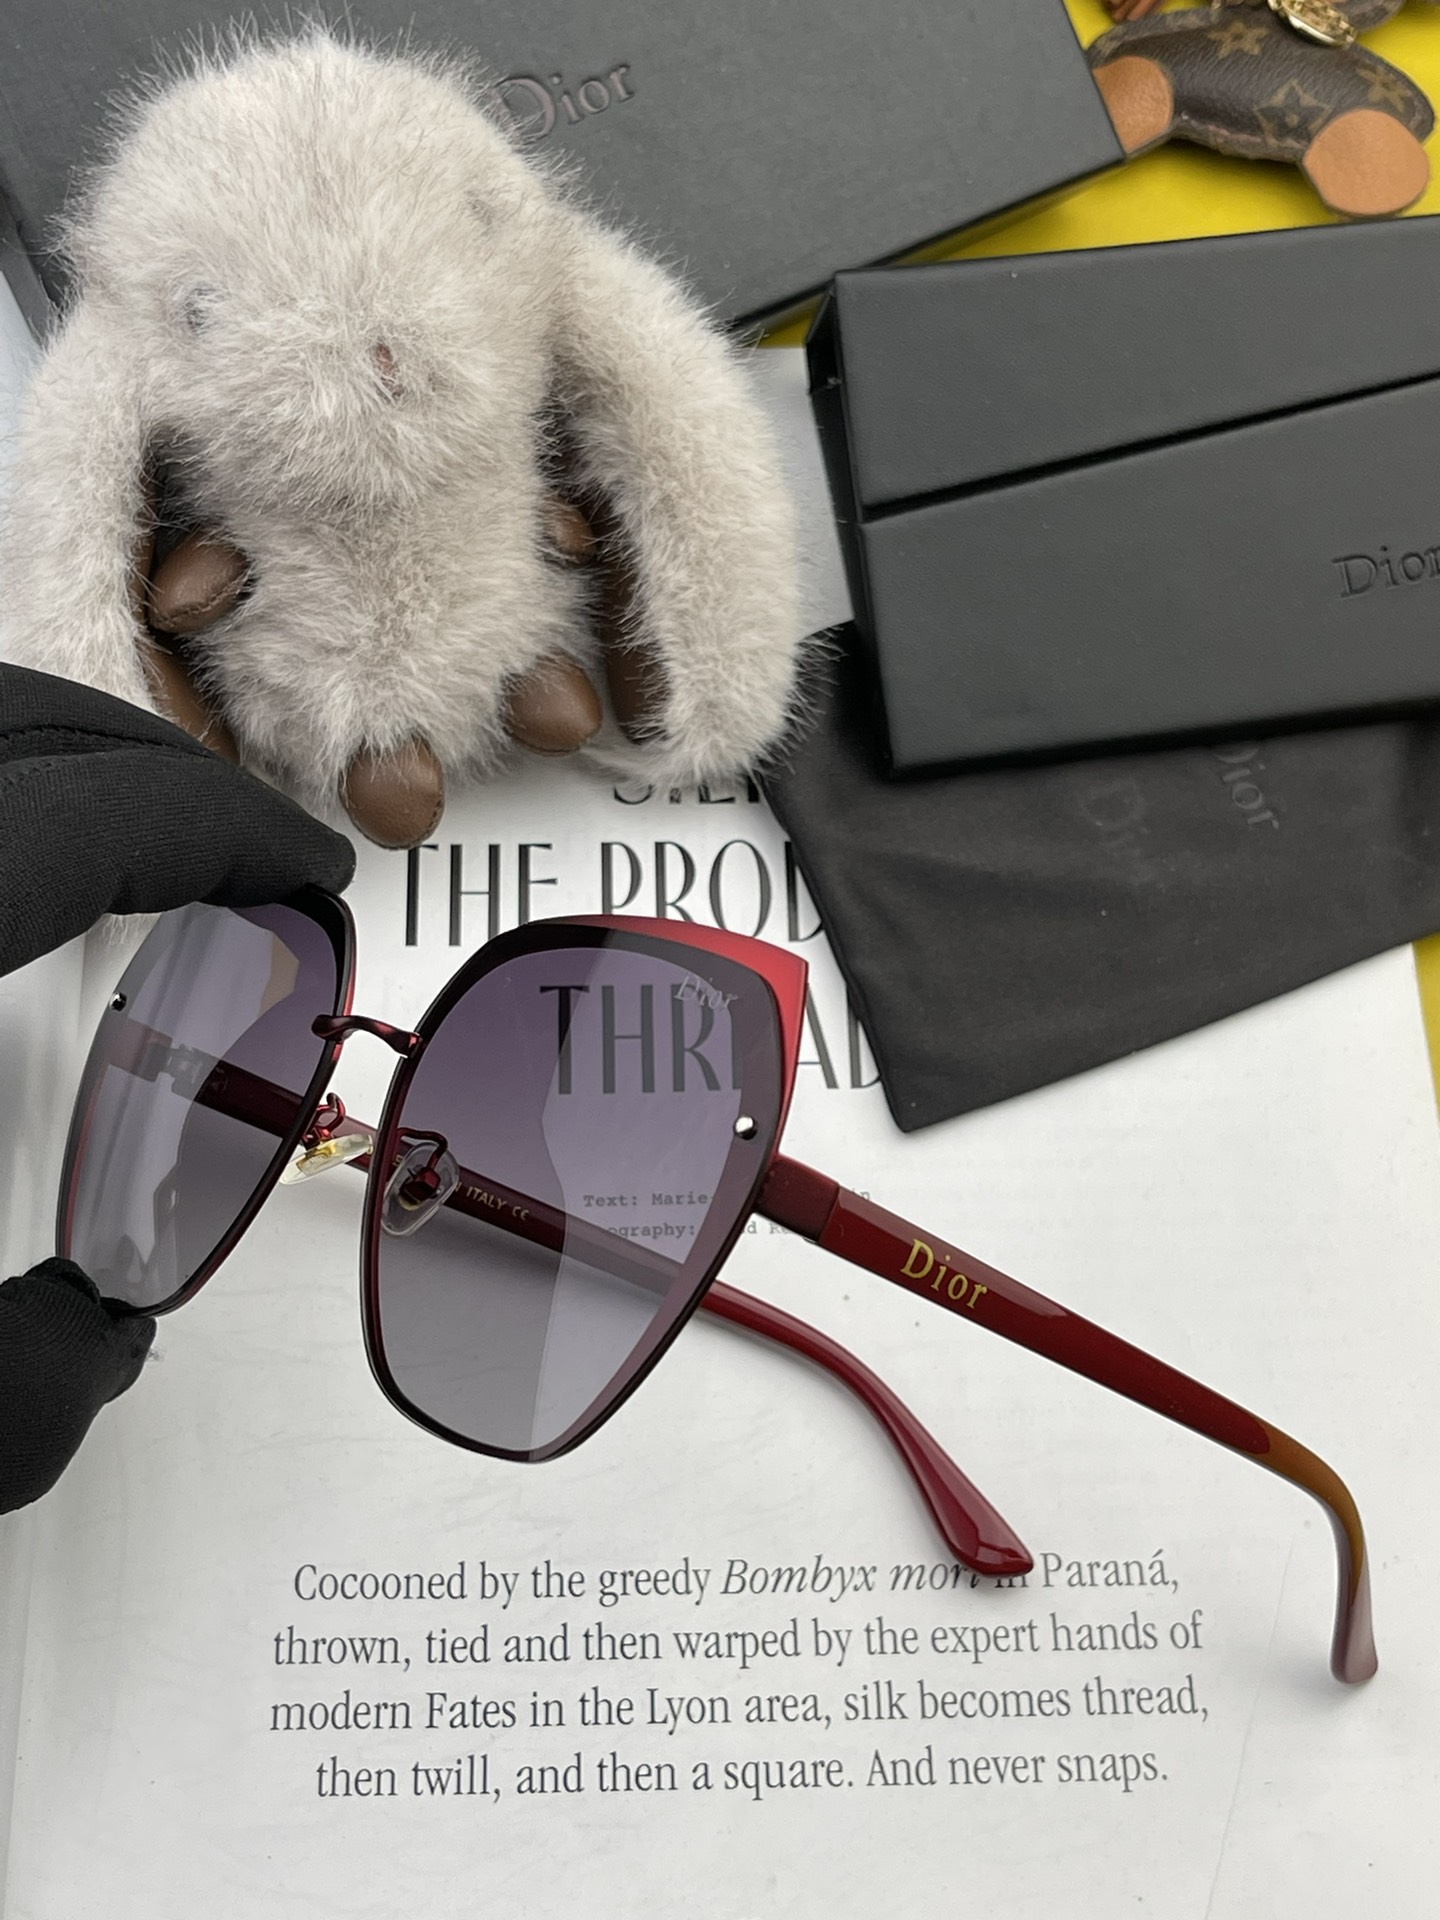 TR版本-偏光独家大牌太阳镜无滤镜实拍上架Dior官网最新发布新款太阳镜注意我们是高清镜片到货随意验货型